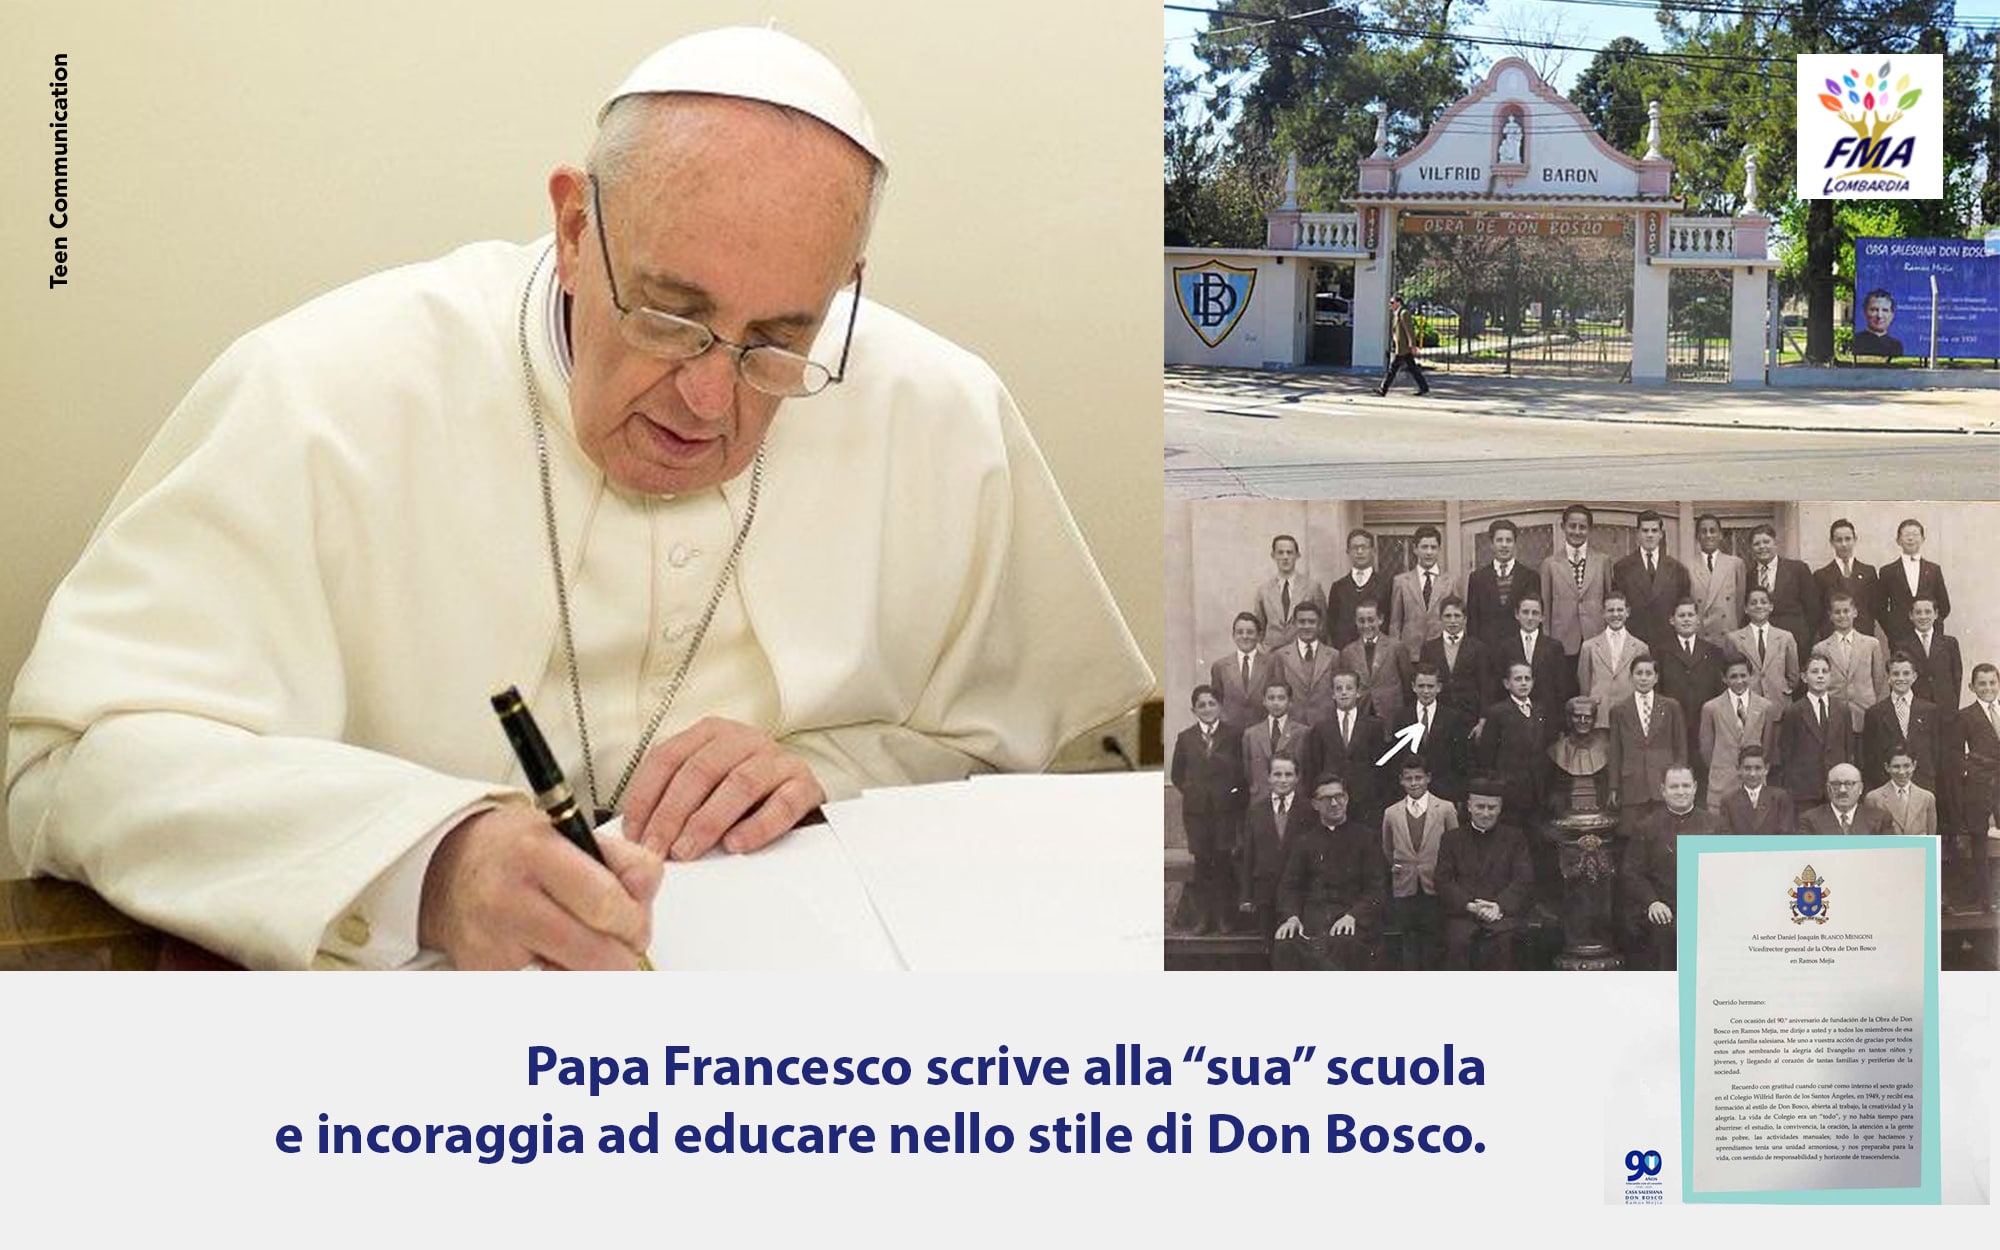 Il Papa scrive alla “sua” scuola